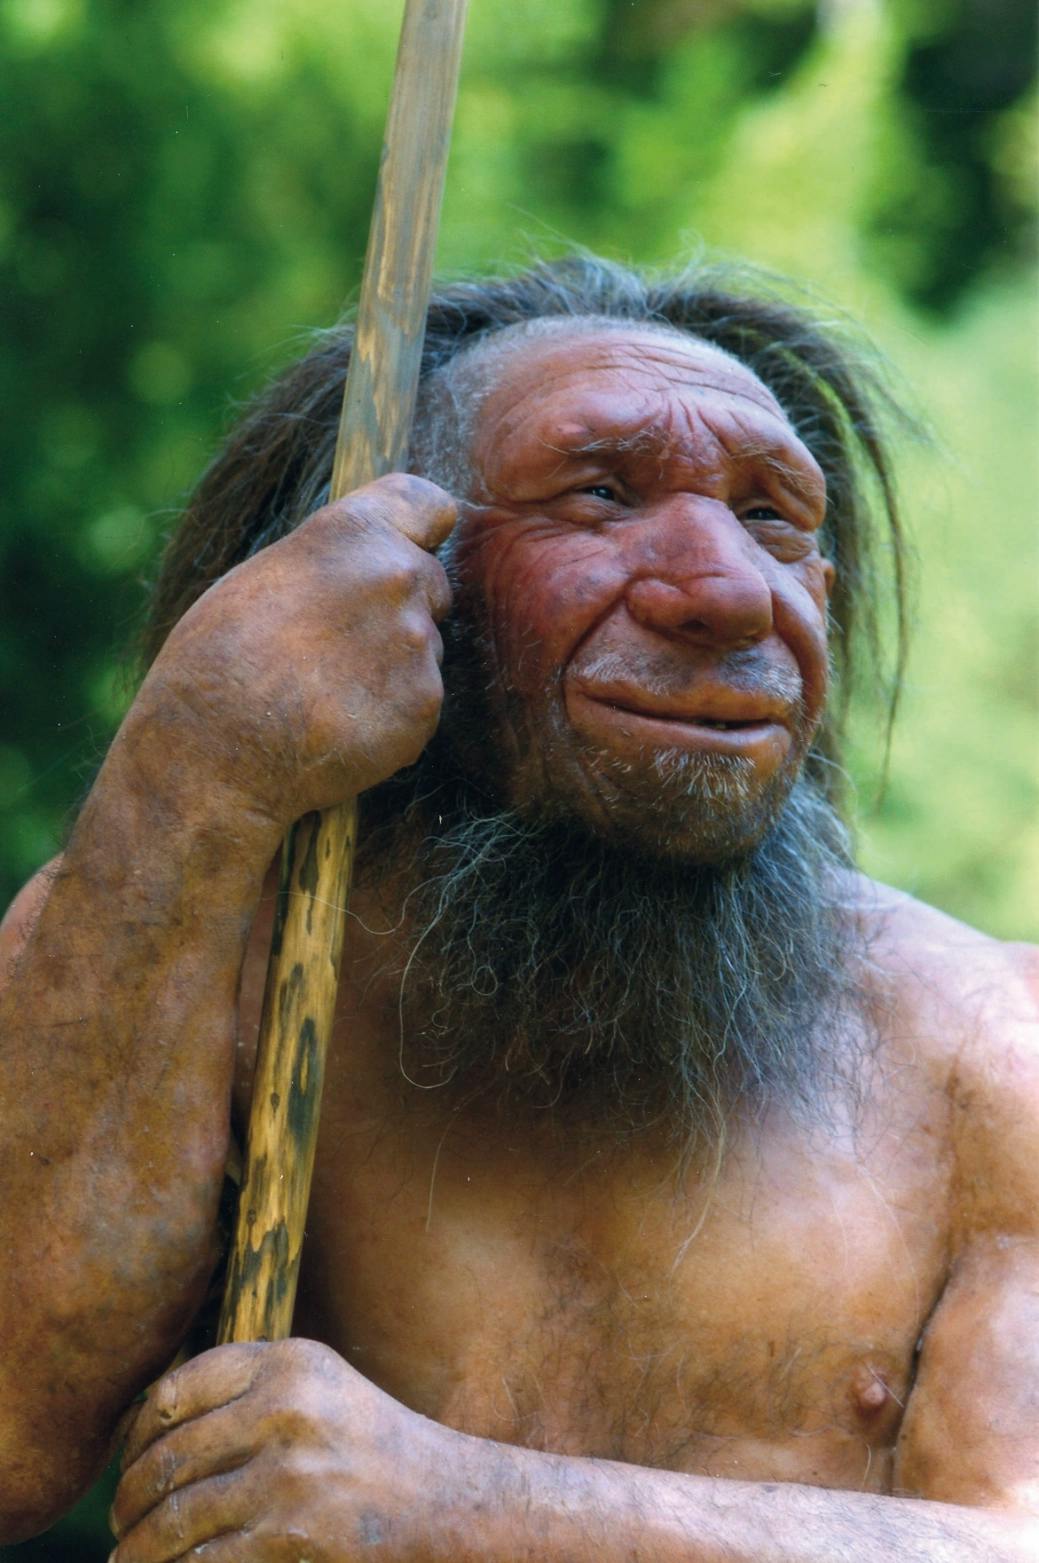 Der Neandertaler in uns